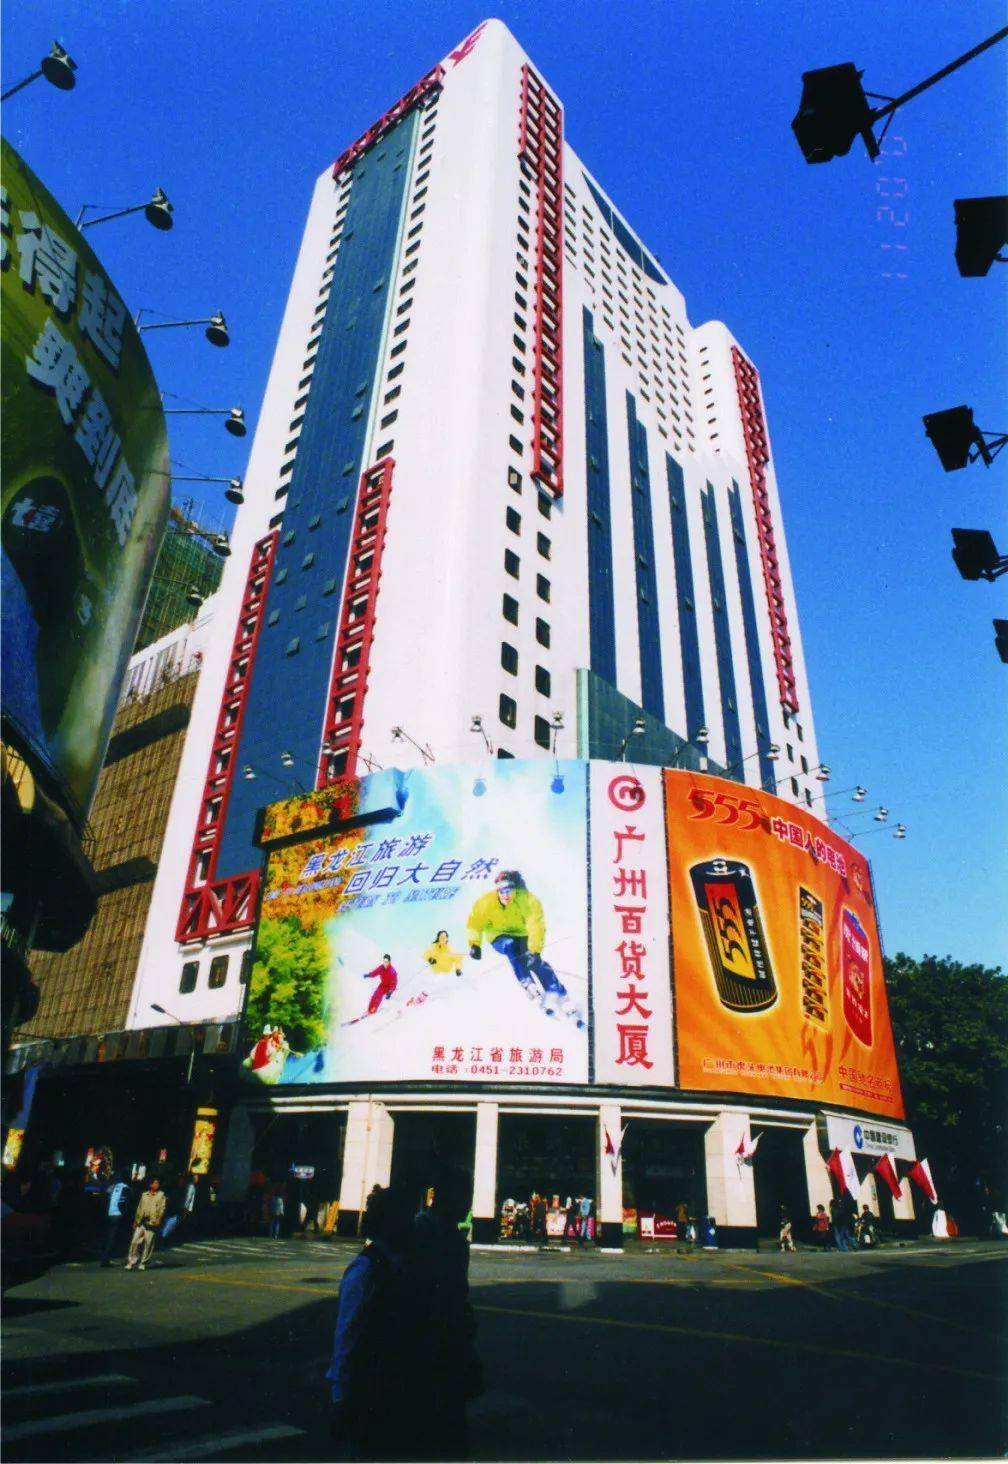 它是北京路 1991年2月8日 ,广百百货首店(广州百货大厦)亮相了 这里